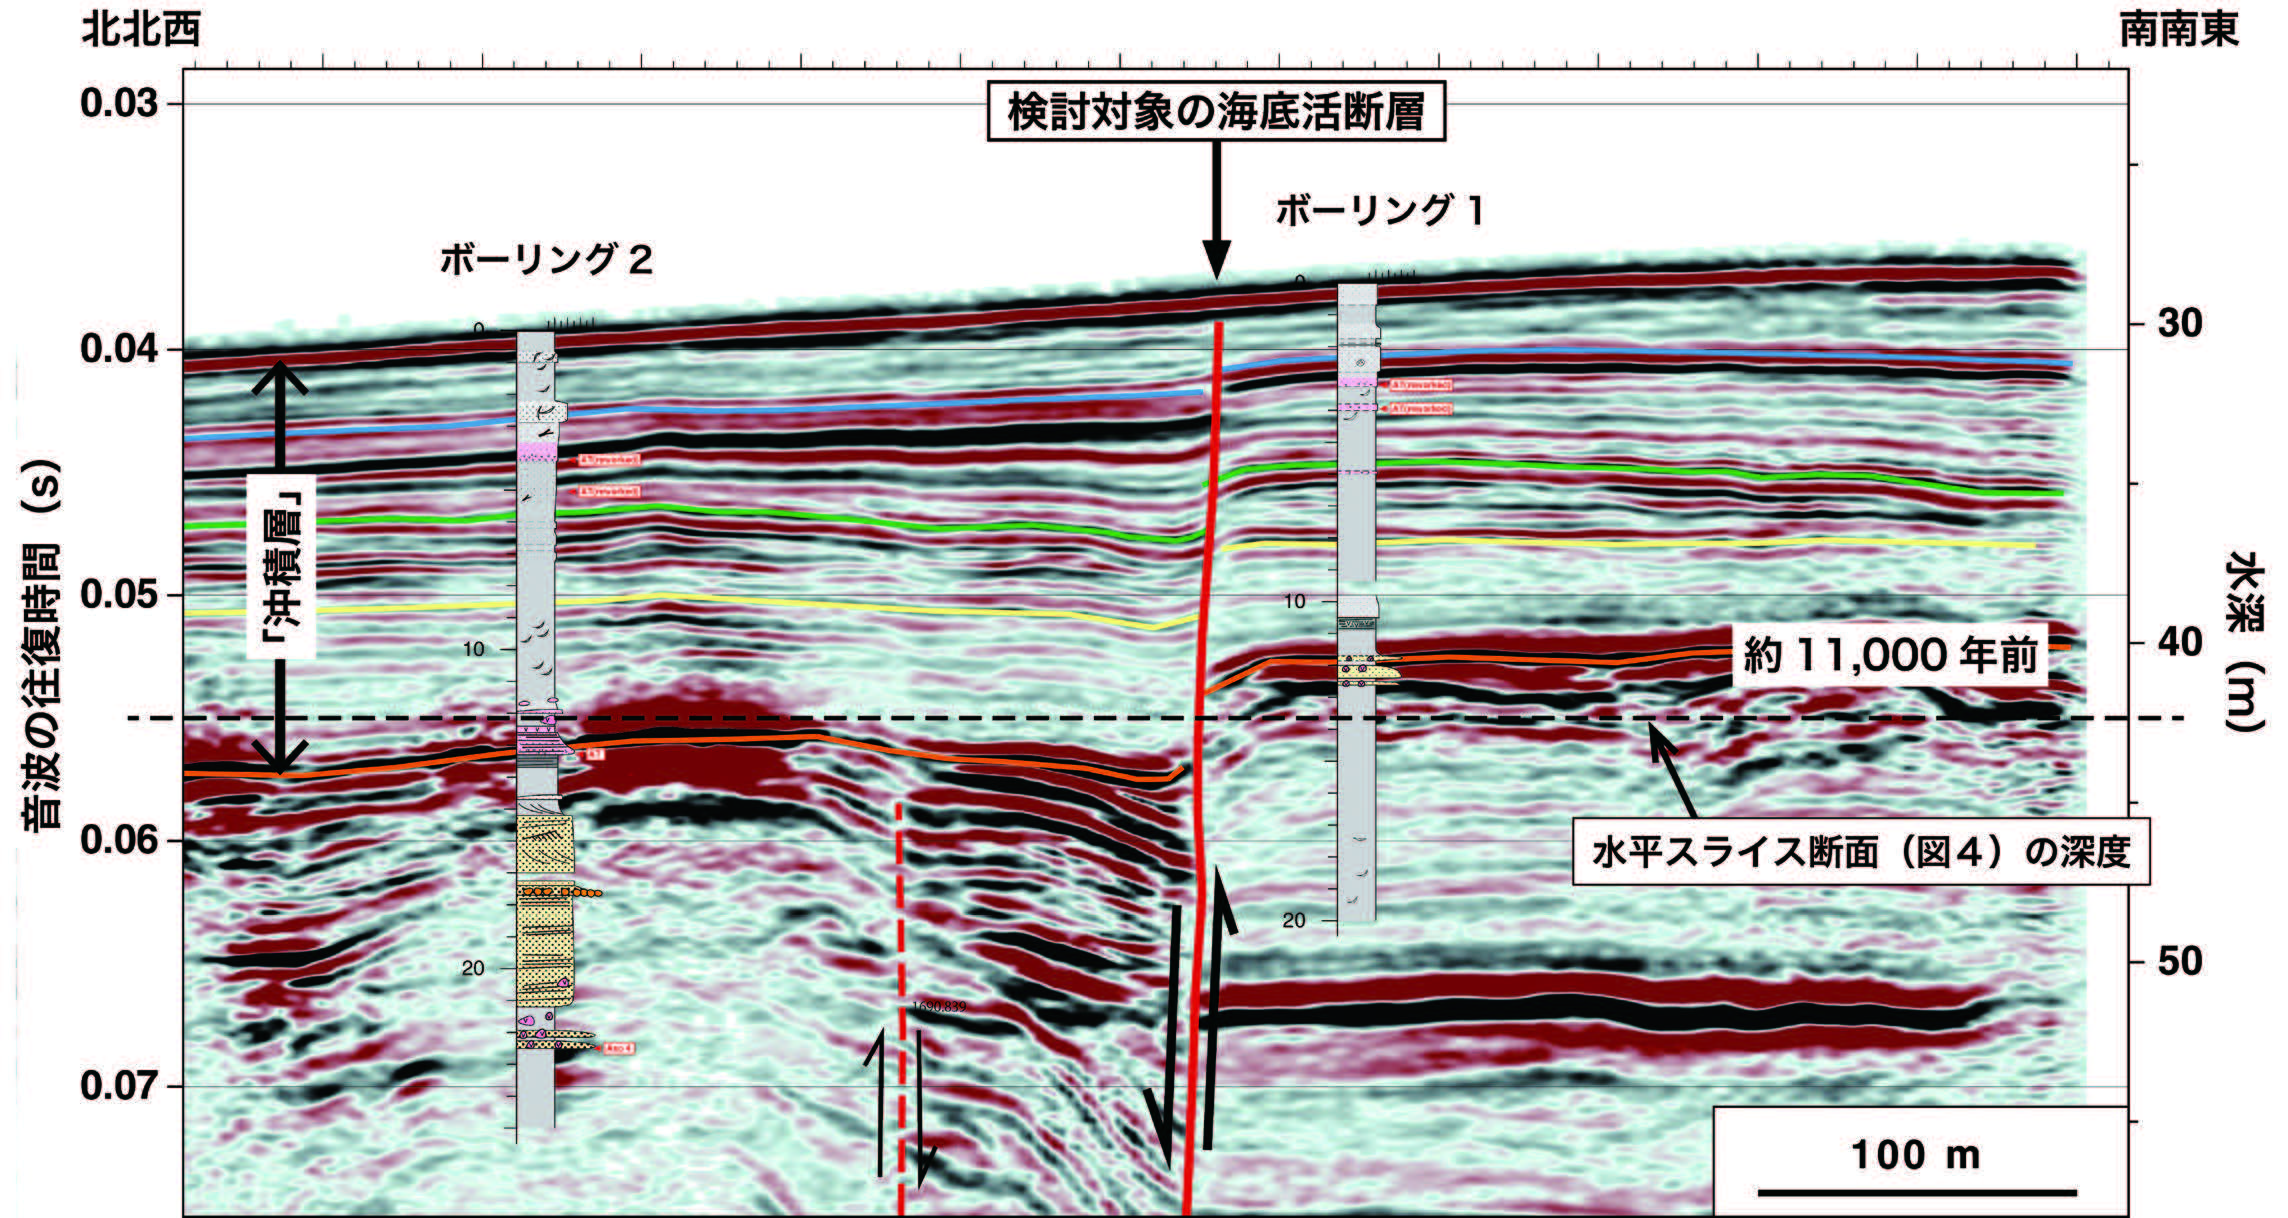 図2　反射法音波探査と海上ボーリングで捉えた海底活断層による「上下方向のずれ」垂直断面を見ると、約11,000 年前よりも新しい時代の「沖積層」（オレンジ色の線で示した面よりも浅部）には、ほぼ水平の反射面が発達しています。これらの反射面は、海底活断層によって上下方向にずれています。